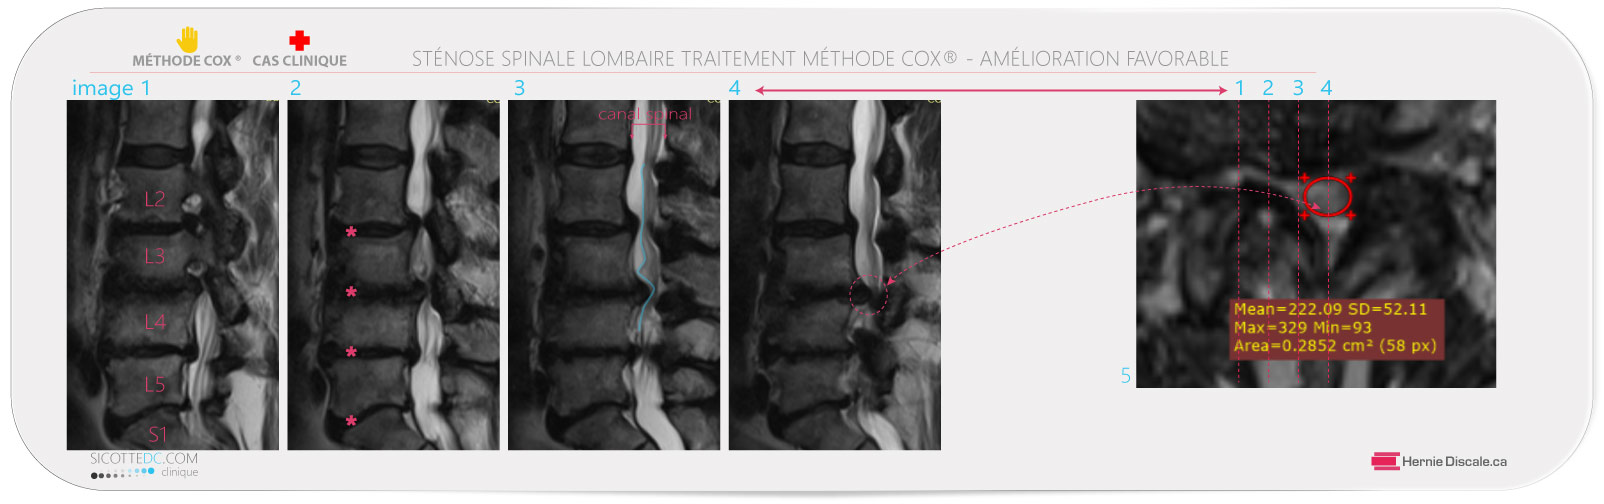 Sténose spinale femme 82 ans. On retrouve une compression sévère aux segments L3-L4.